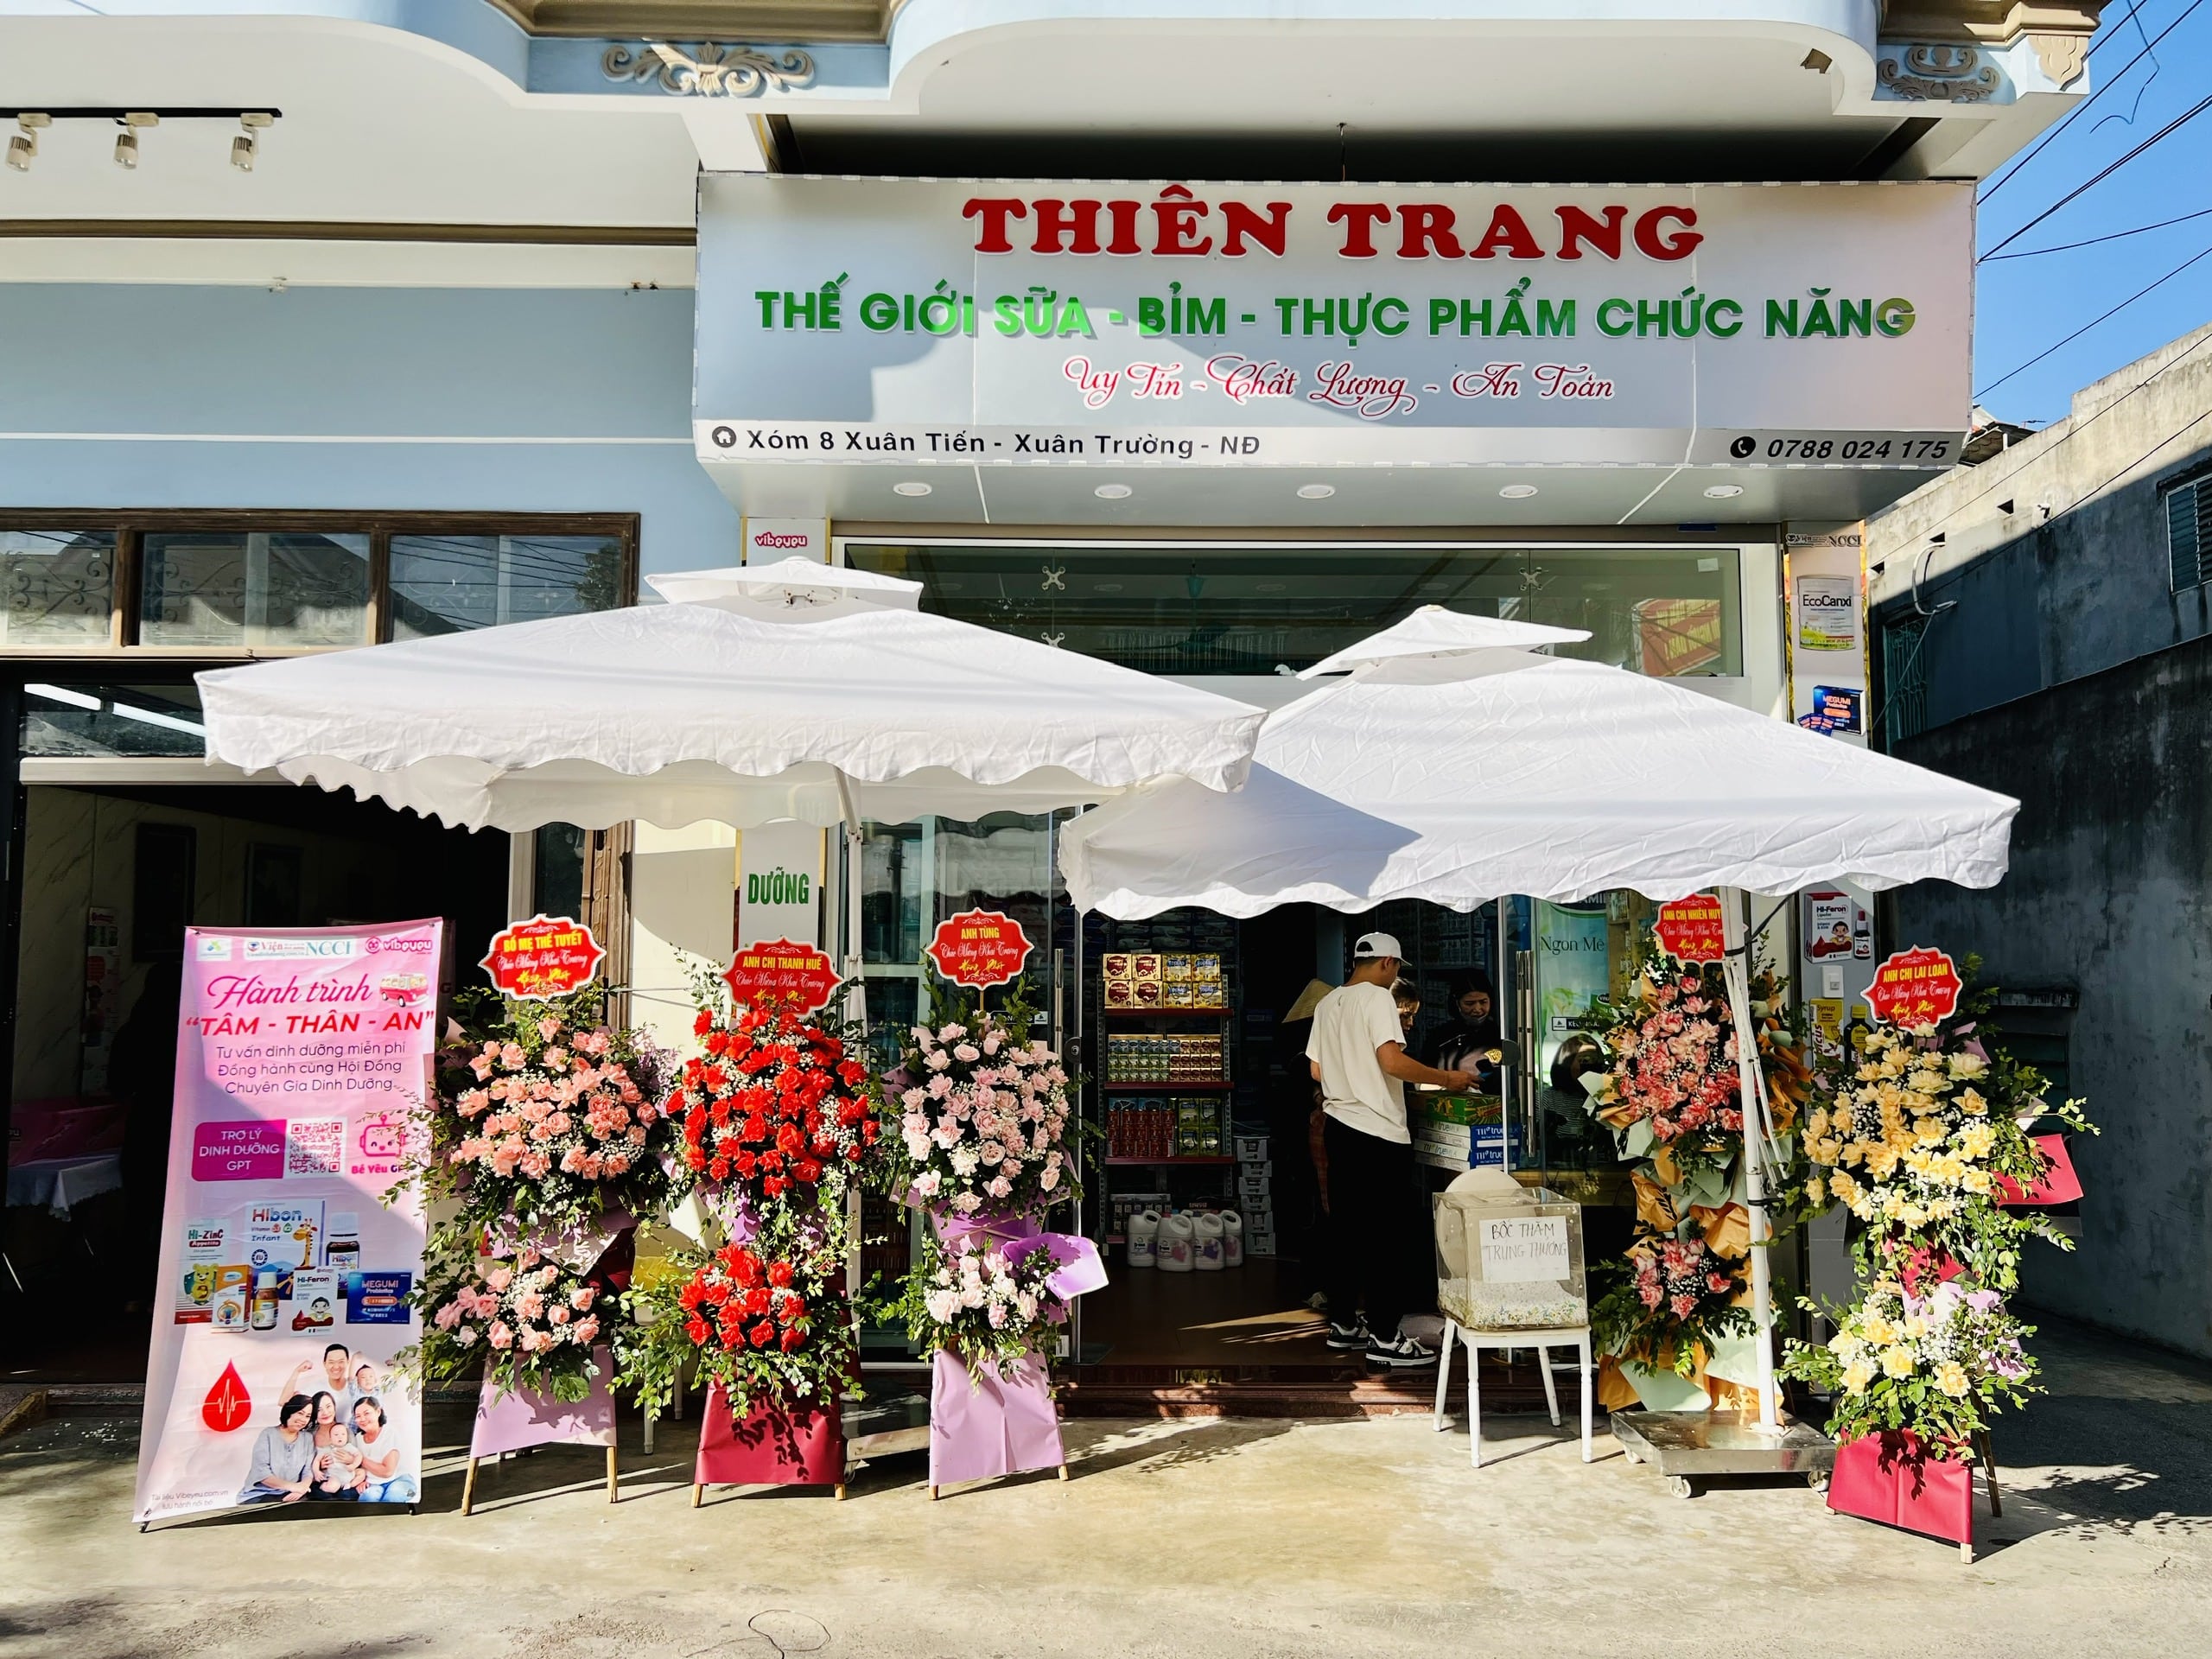 Sự Kiện Khai Trương Sữa Bỉm Thiên Trang – Đánh Dấu Bước Chuyển Mình Tại Xuân Trường, Nam Định